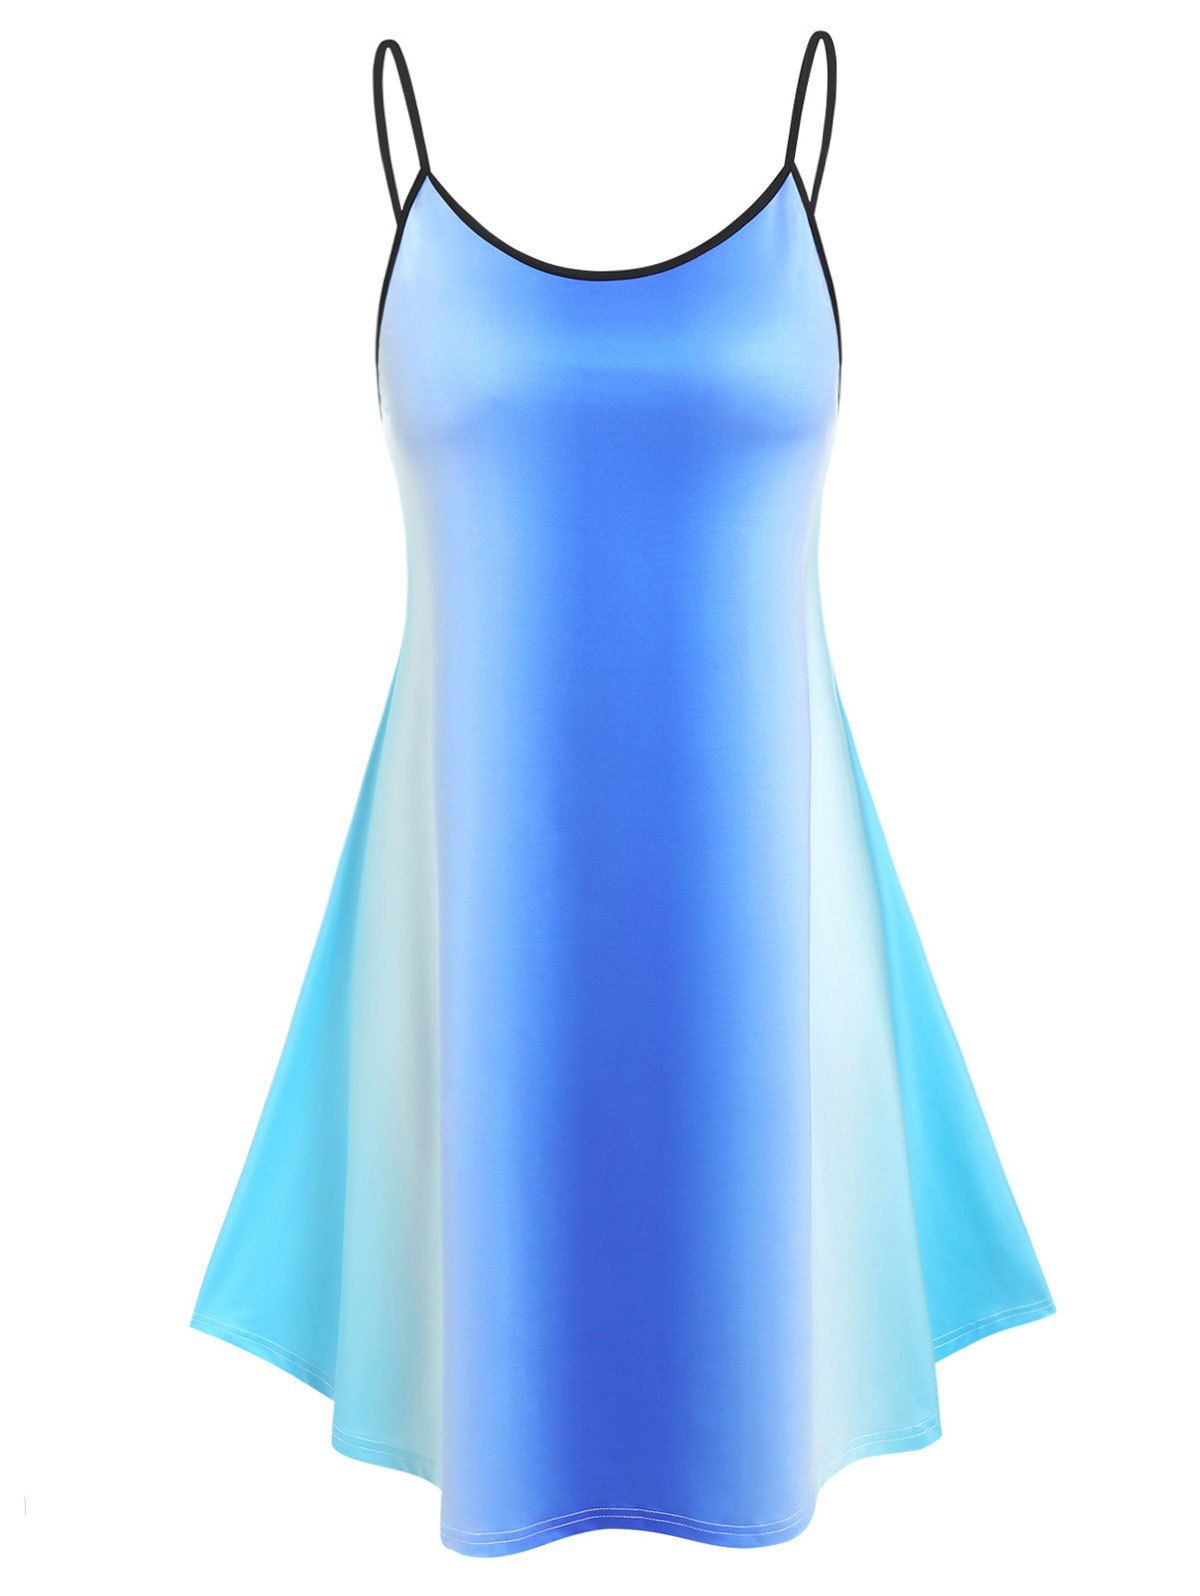 Plus Size Ombre Color Cami Dress - BLUE L